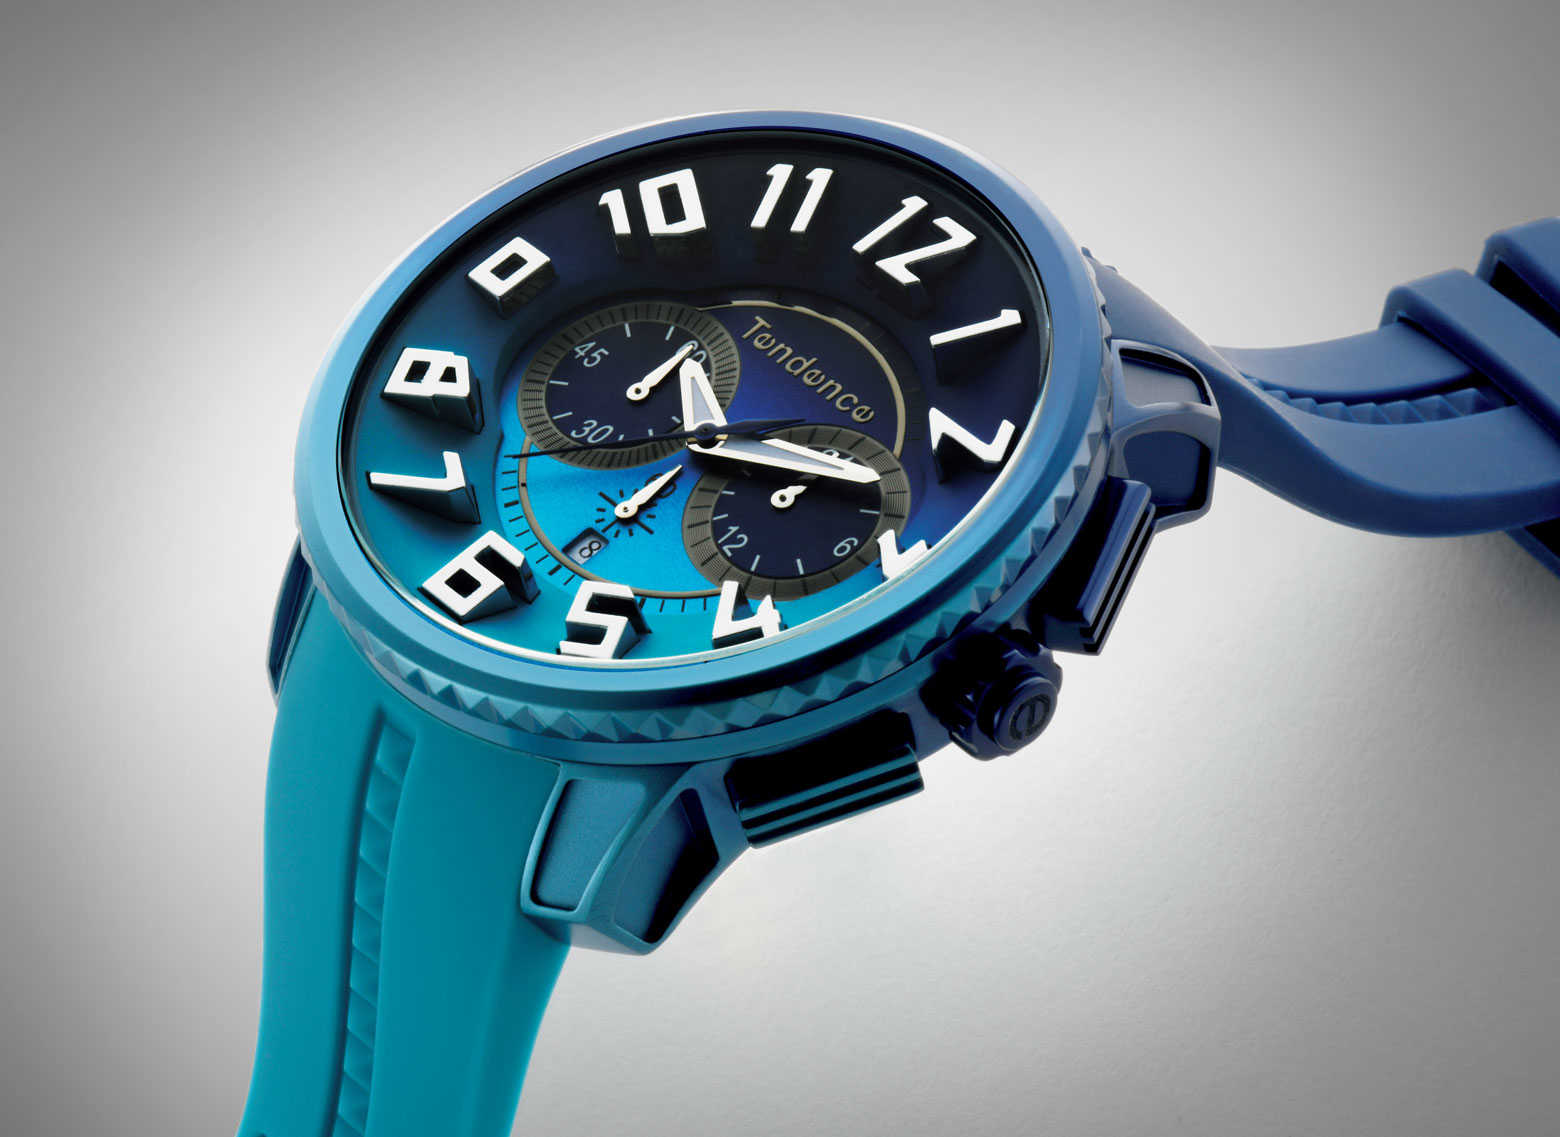 FOCUS ON 今月注目したいモノ・コトブロンズ肌の海男の手元にはグランブルーの腕時計が映える！ | Watches | Safari Online